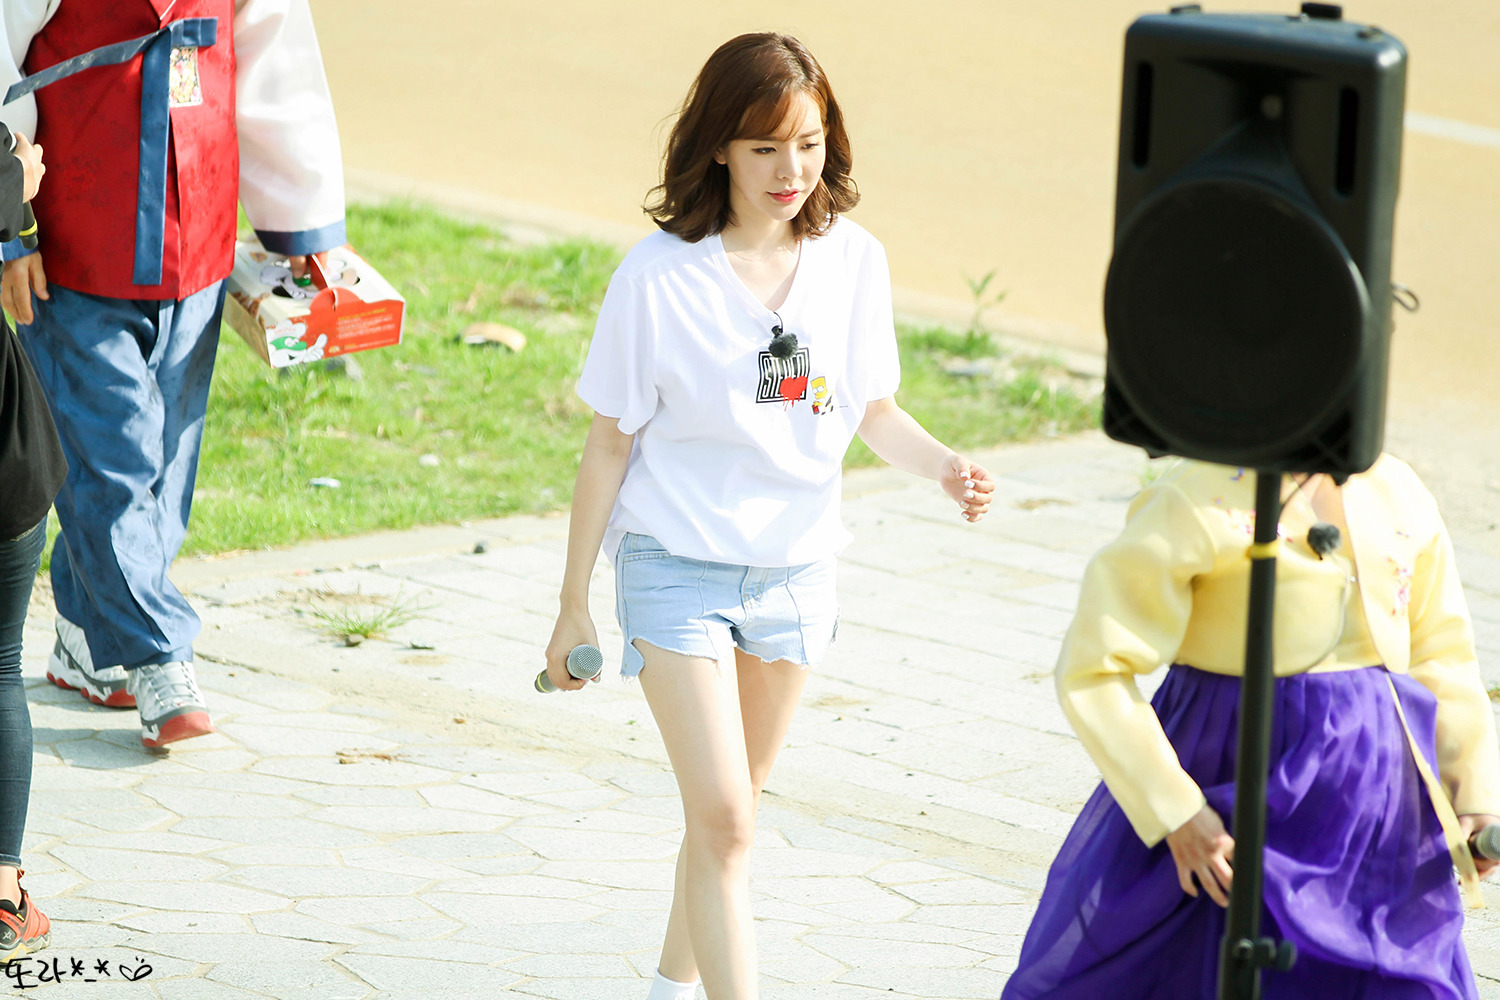 [PIC][16-05-2016]Sunny ghi hình cho chương trình "재래시장 살리자" của kênh JTBC tại Busan vào hôm nay - Page 12 252817425950EEB12CAD1A